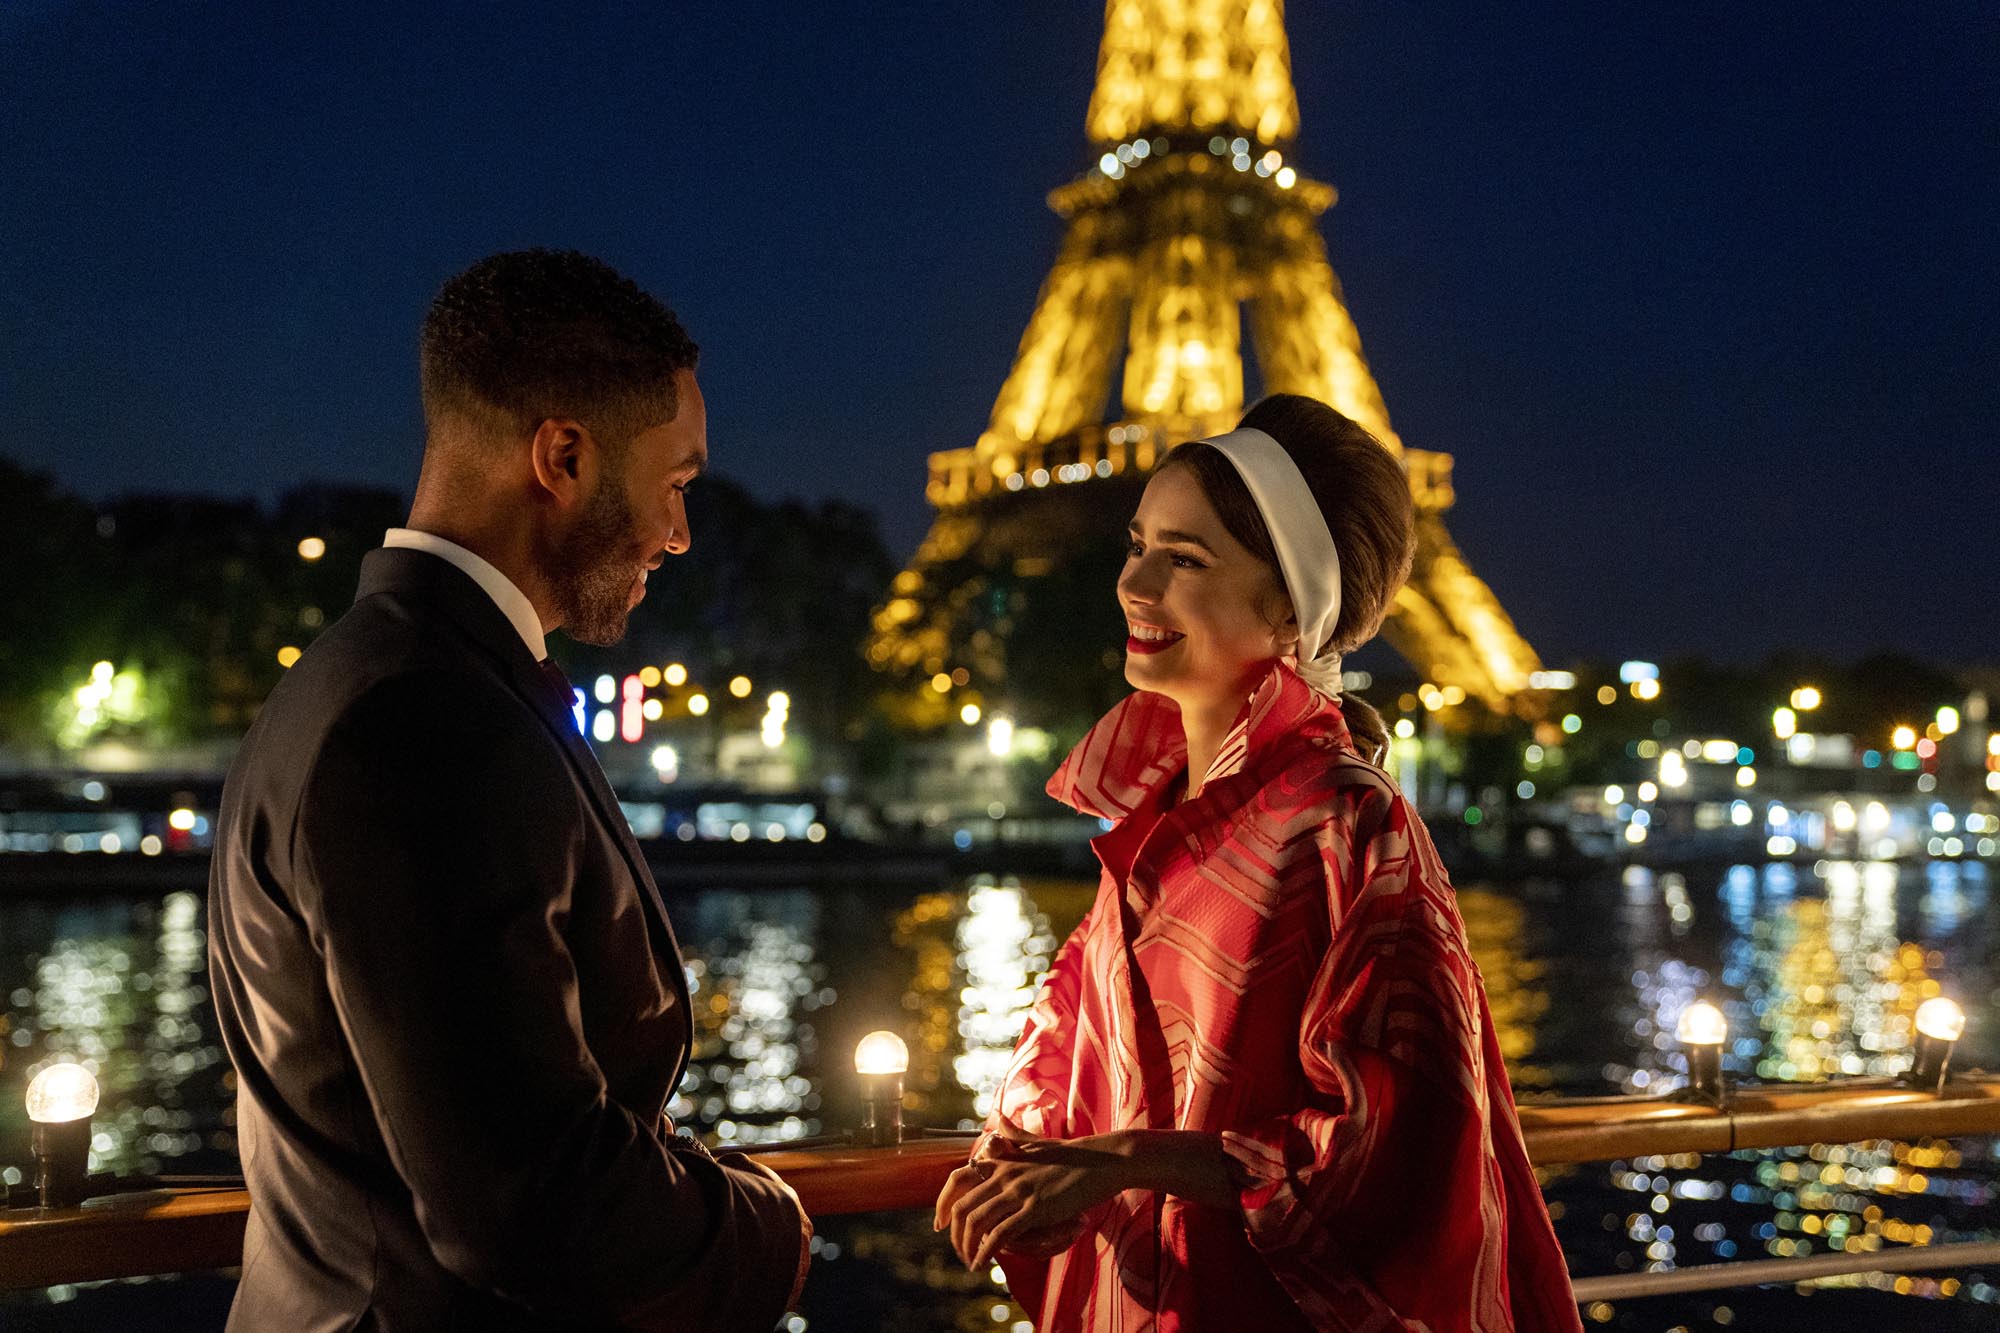 صورة قصة مسلسل إيميلي في باريس الموسم الثاني مترجم